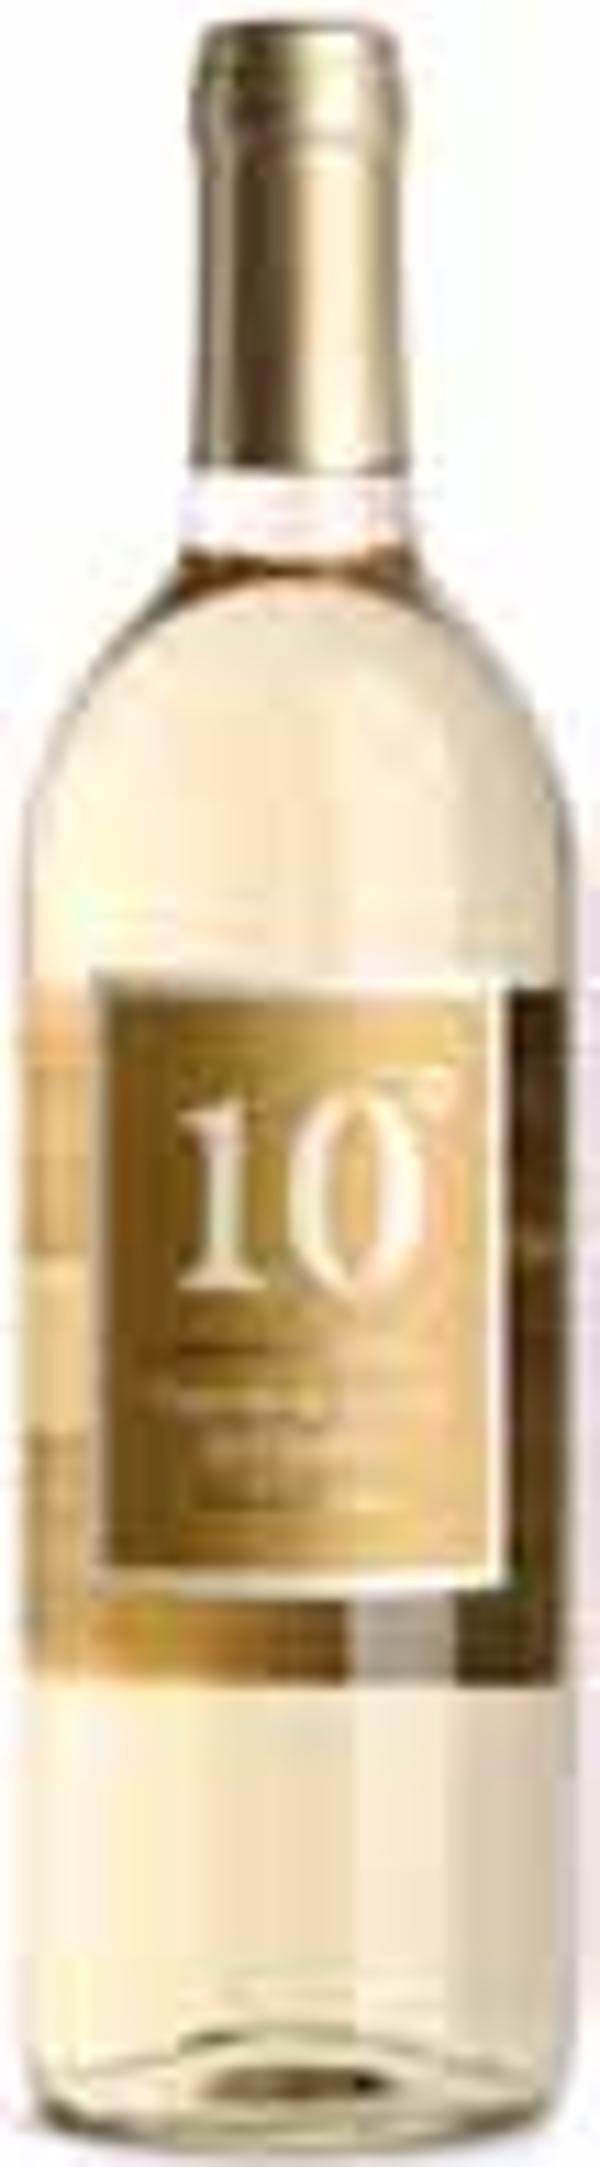 Produktfoto zu Bioladen* 10°de la Tierra de Castilla Weißwein trocken 0,75L